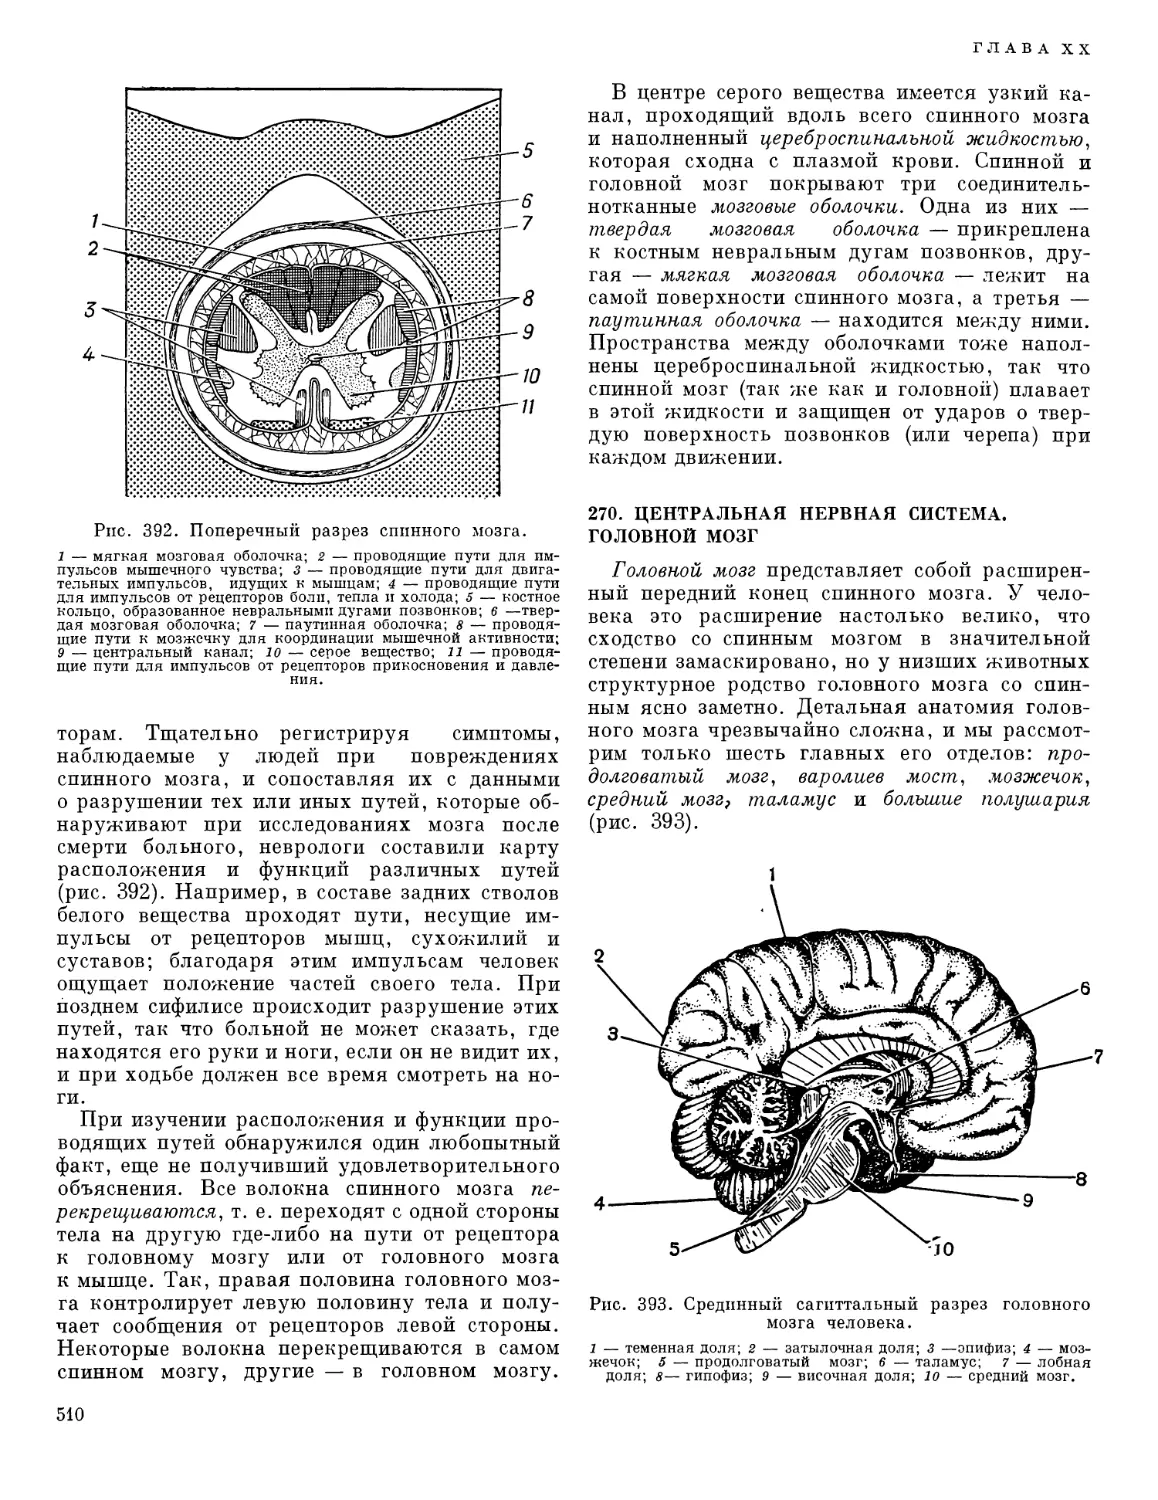 270. Центральная нервная система. Головной мозг